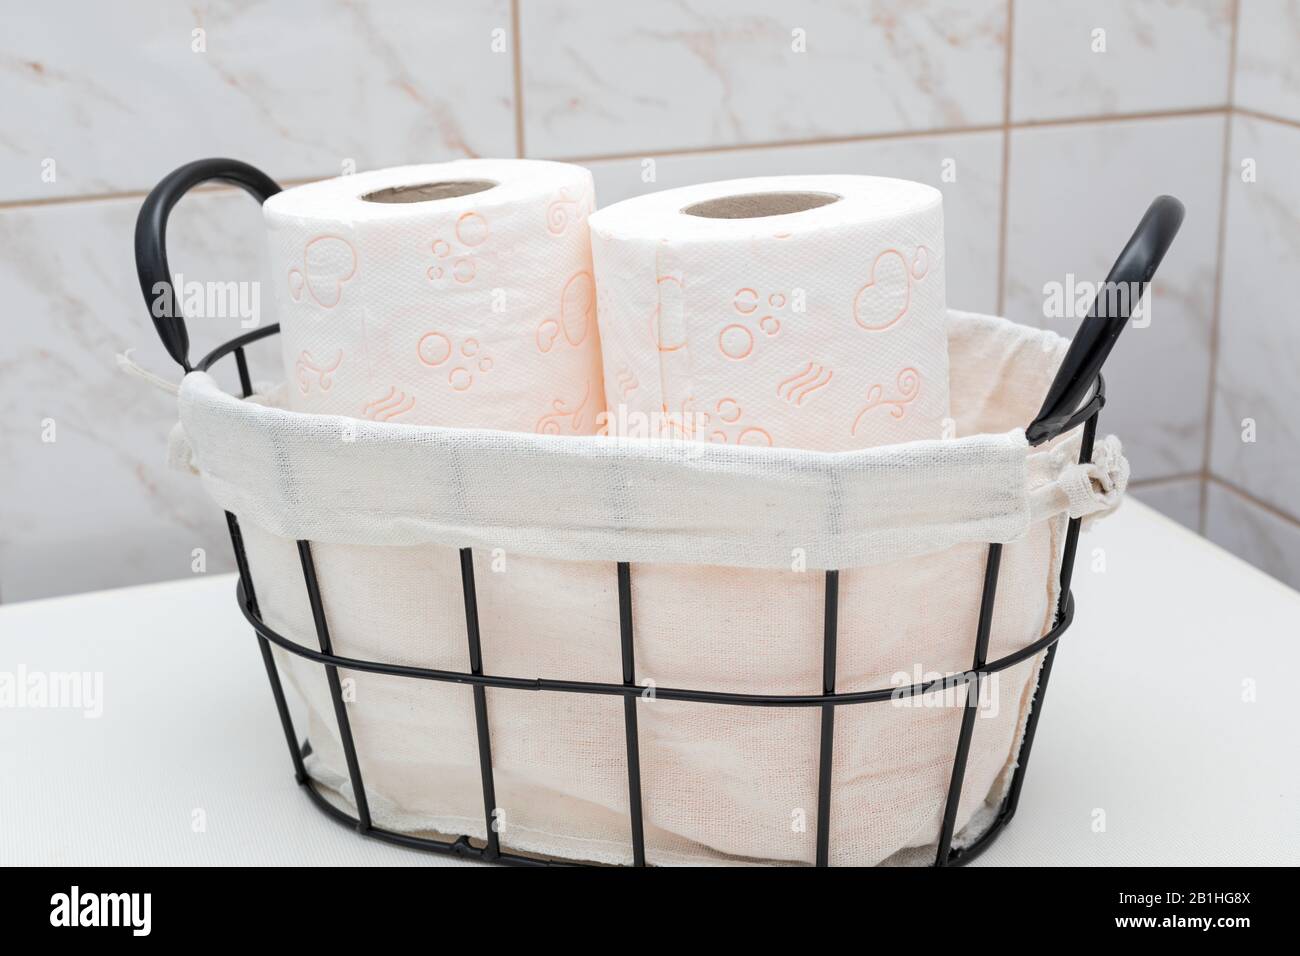 Rouleaux de papier toilette doux dans un panier vintage Photo Stock - Alamy